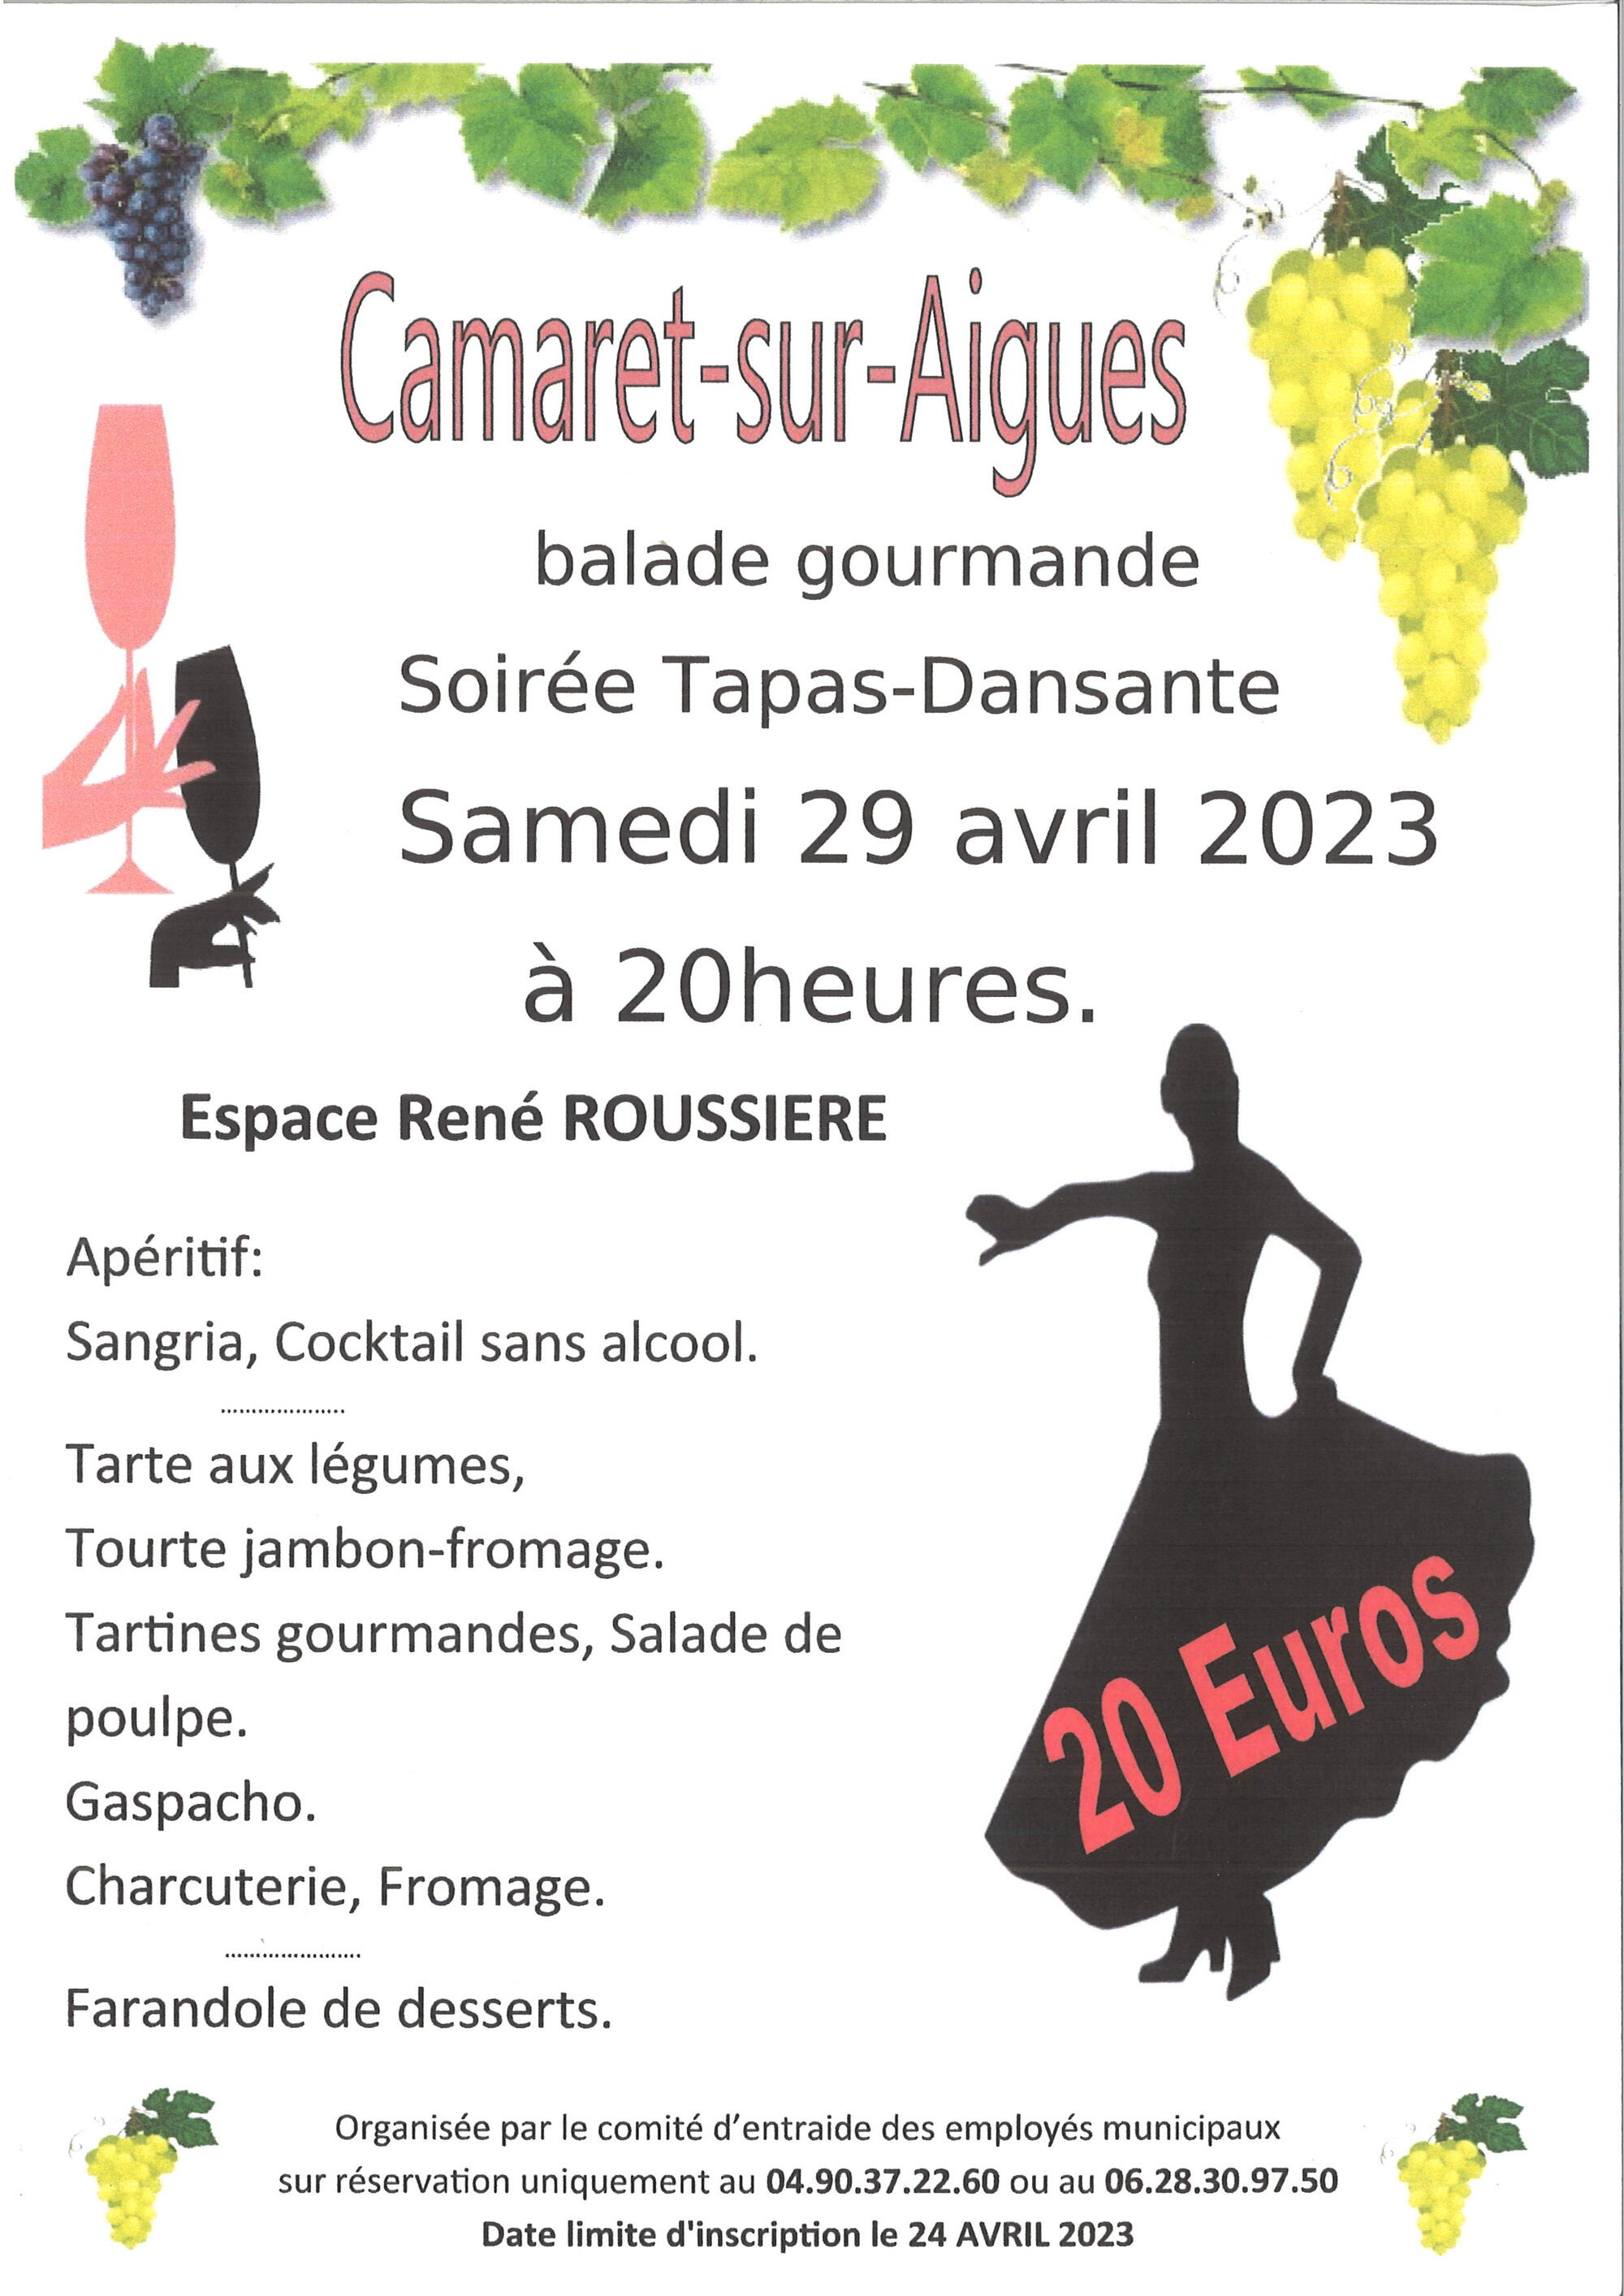 Soirée Tapas-Dansante le samedi 29 avril 2023 à 20h00 à la salle René Roussière